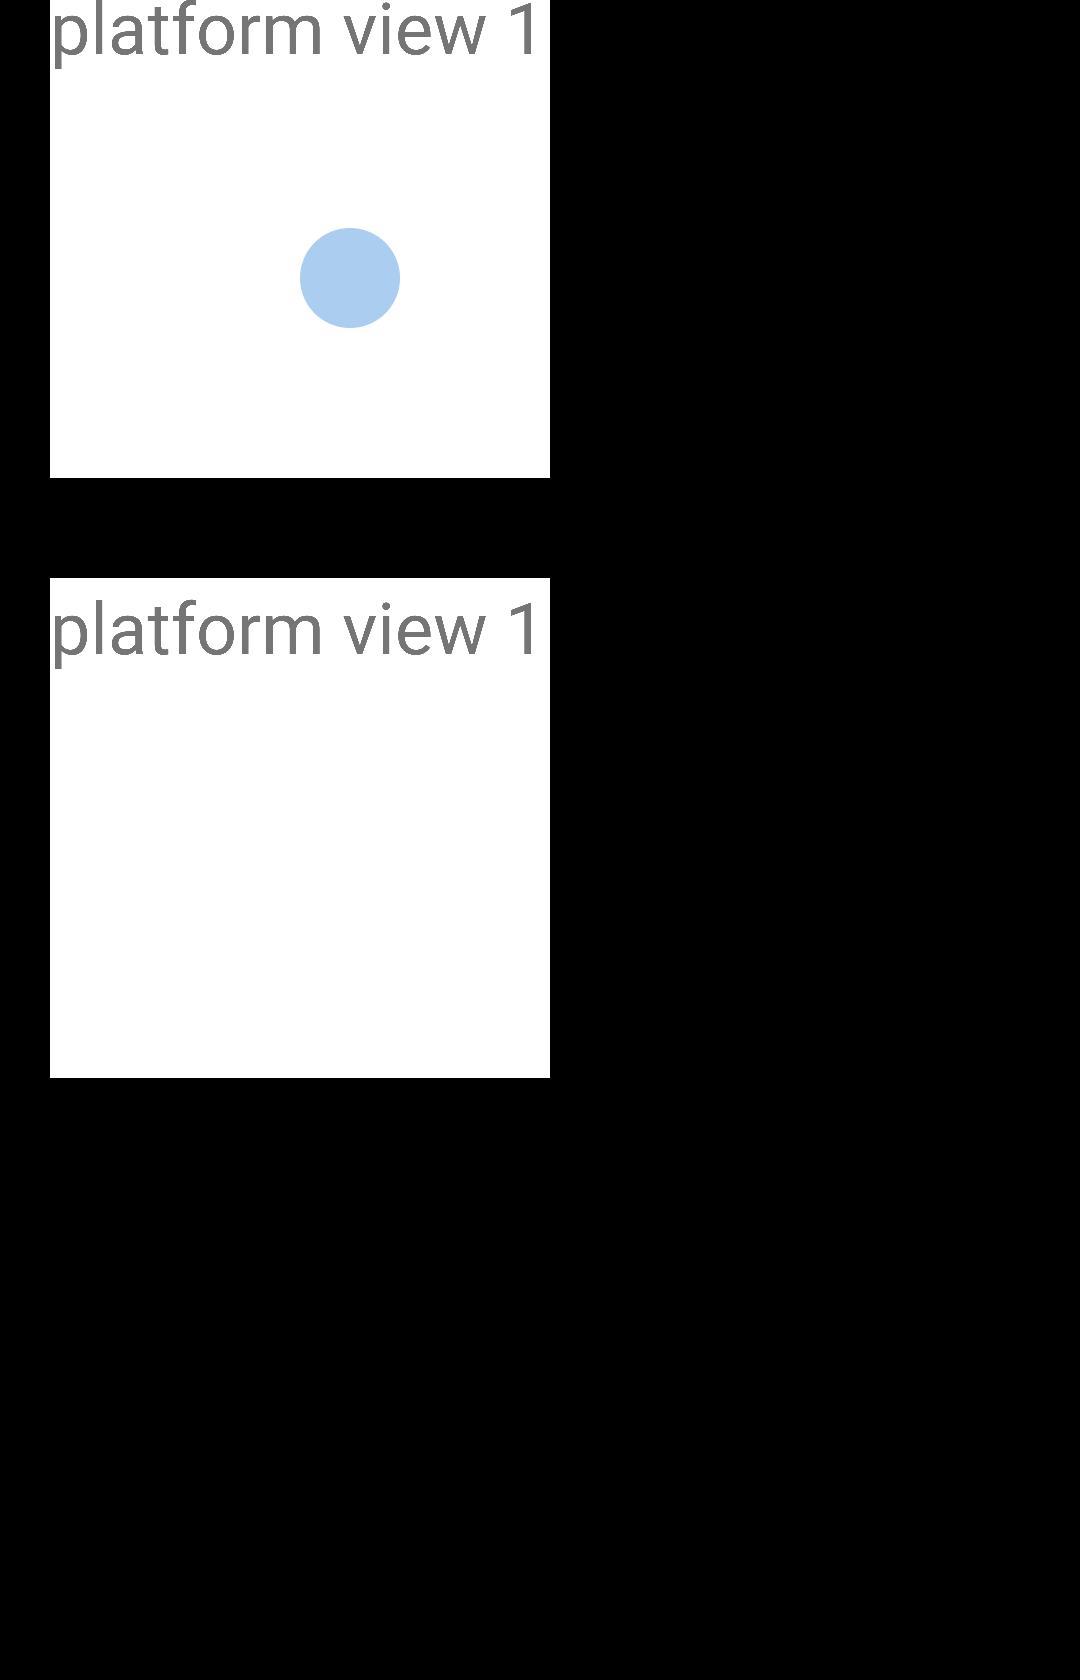 testing/scenario_app/android/reports/screenshots/dev.flutter.scenariosui.PlatformTextureUiTests__testPlatformViewMultiple.png